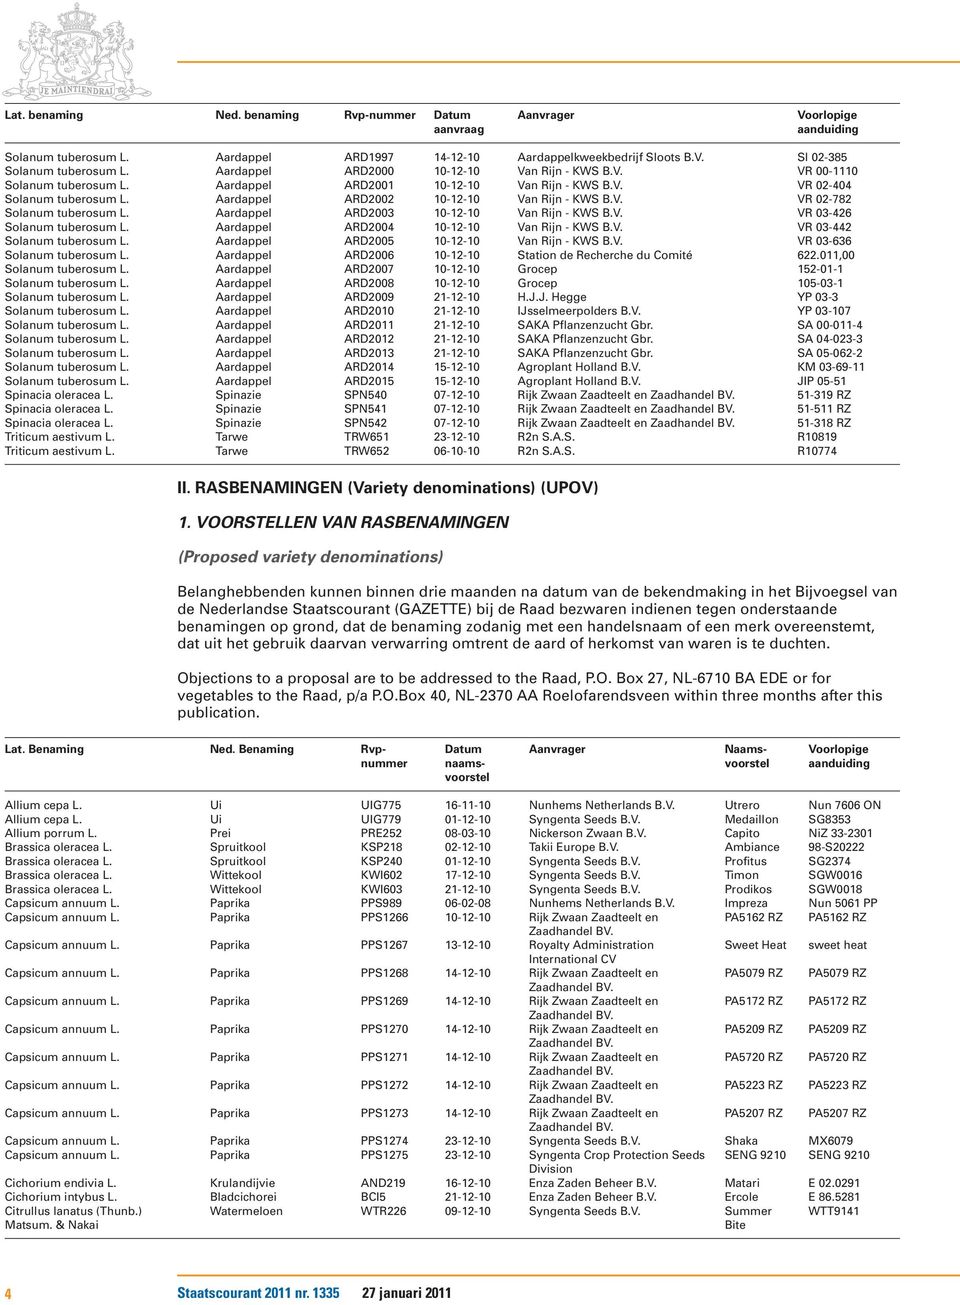 Aardappel ARD2002 10-12-10 Van Rijn - KWS VR 02-782 Solanum tuberosum L. Aardappel ARD2003 10-12-10 Van Rijn - KWS VR 03-426 Solanum tuberosum L.